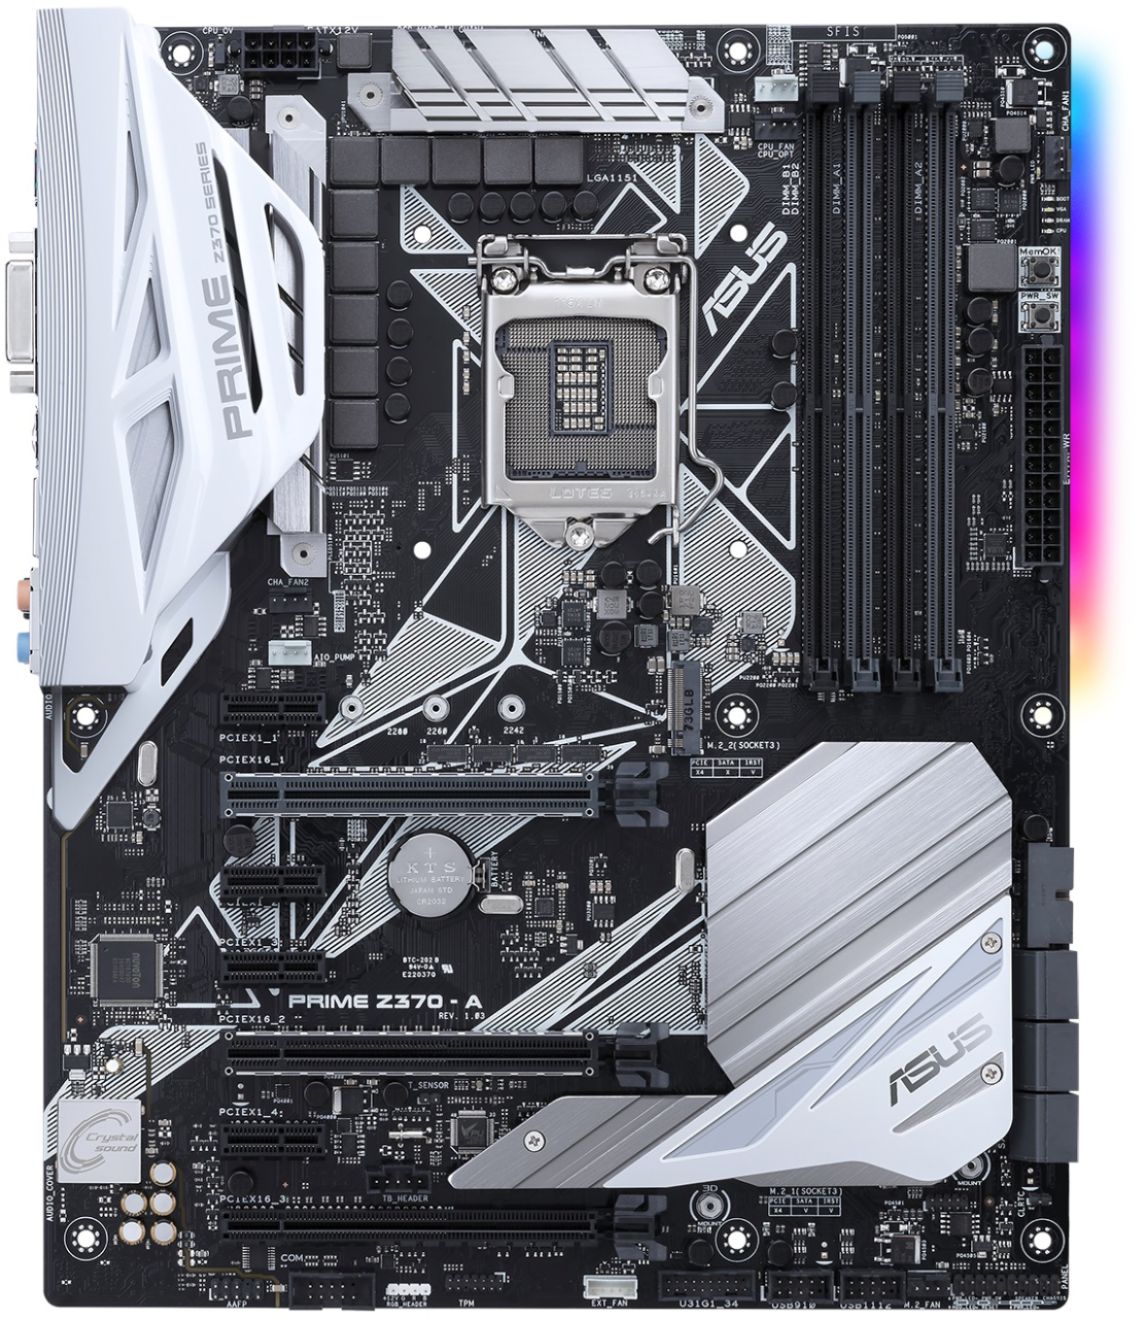 Asus PRIME Z370-A (Socket LGA1151) 3.1 Gen 1 Intel Motherboard with LED Lighting Black PRIME Best Buy